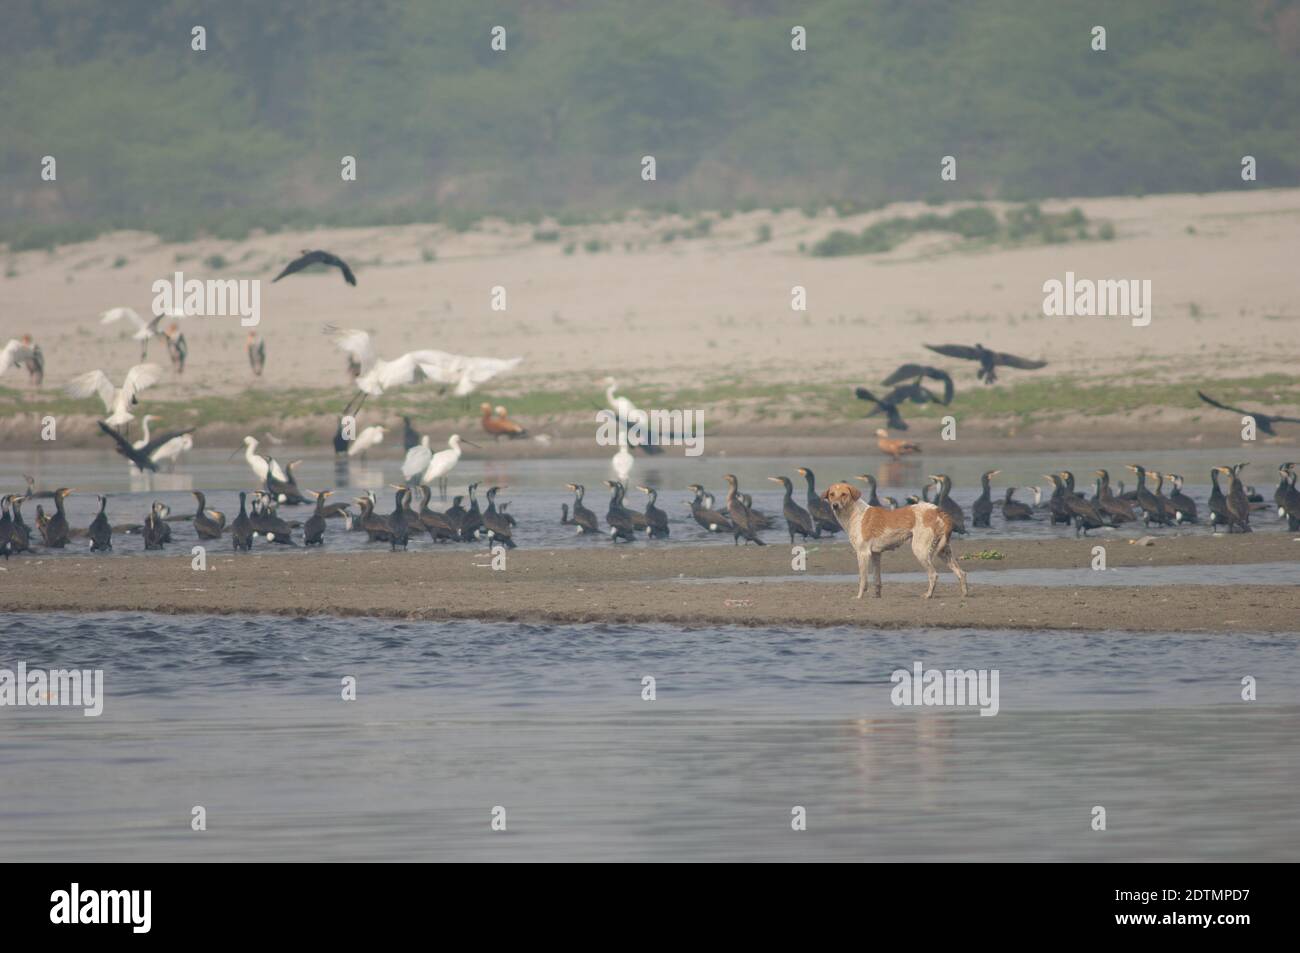 Cane feriale Canis familiaris e cormorani grandi e cucchiai eurasiatici sullo sfondo. Fiume Yamuna. Agra. Utttar Pradesh. India. Foto Stock